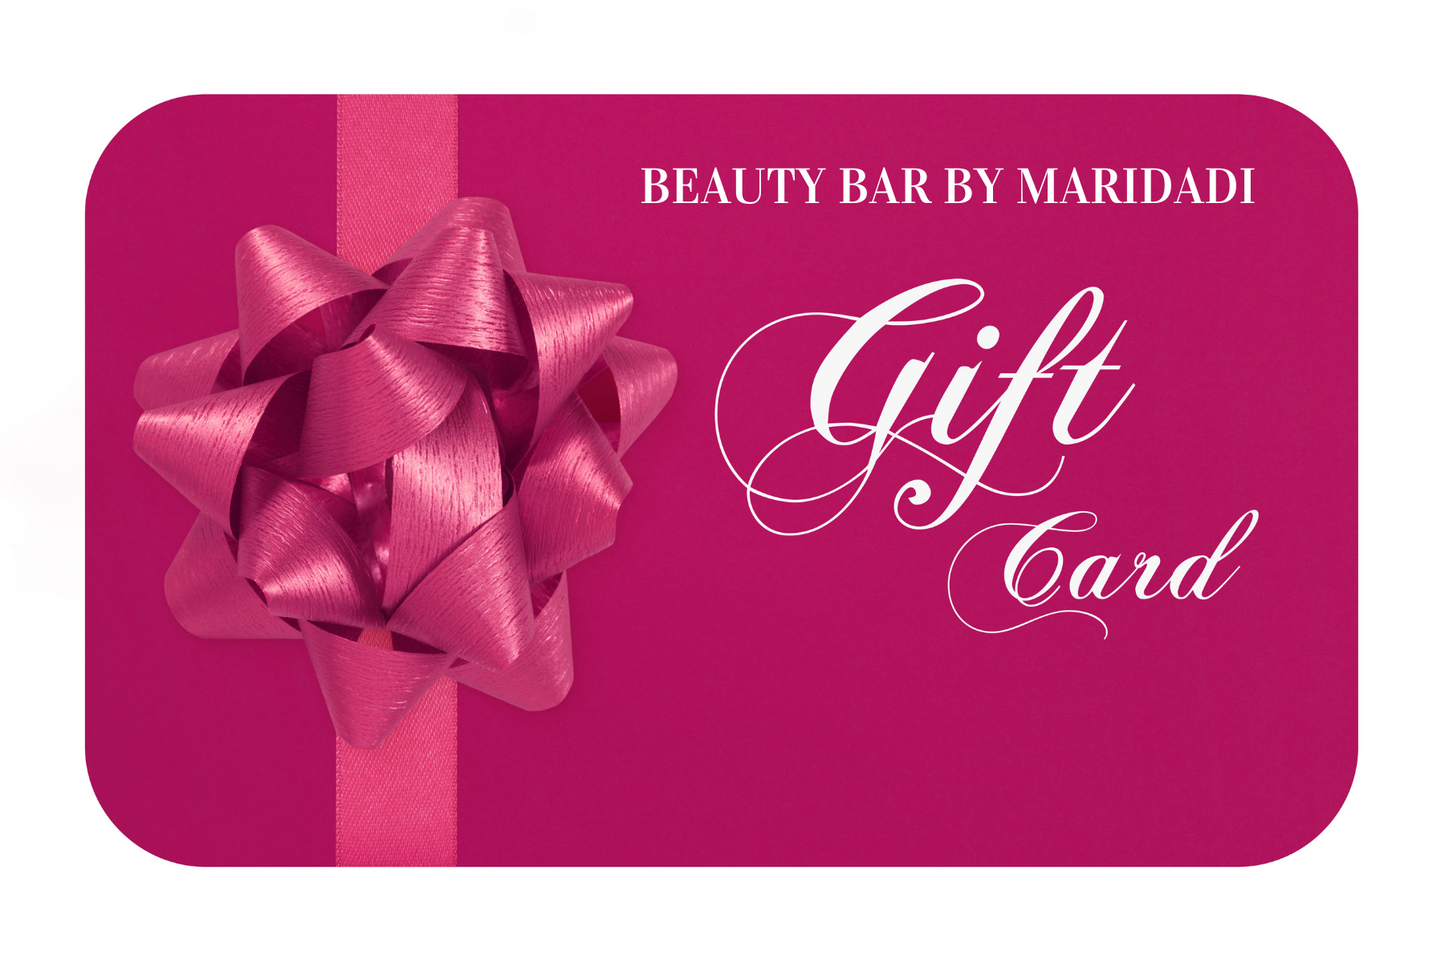 Beauty Bar Gift Card